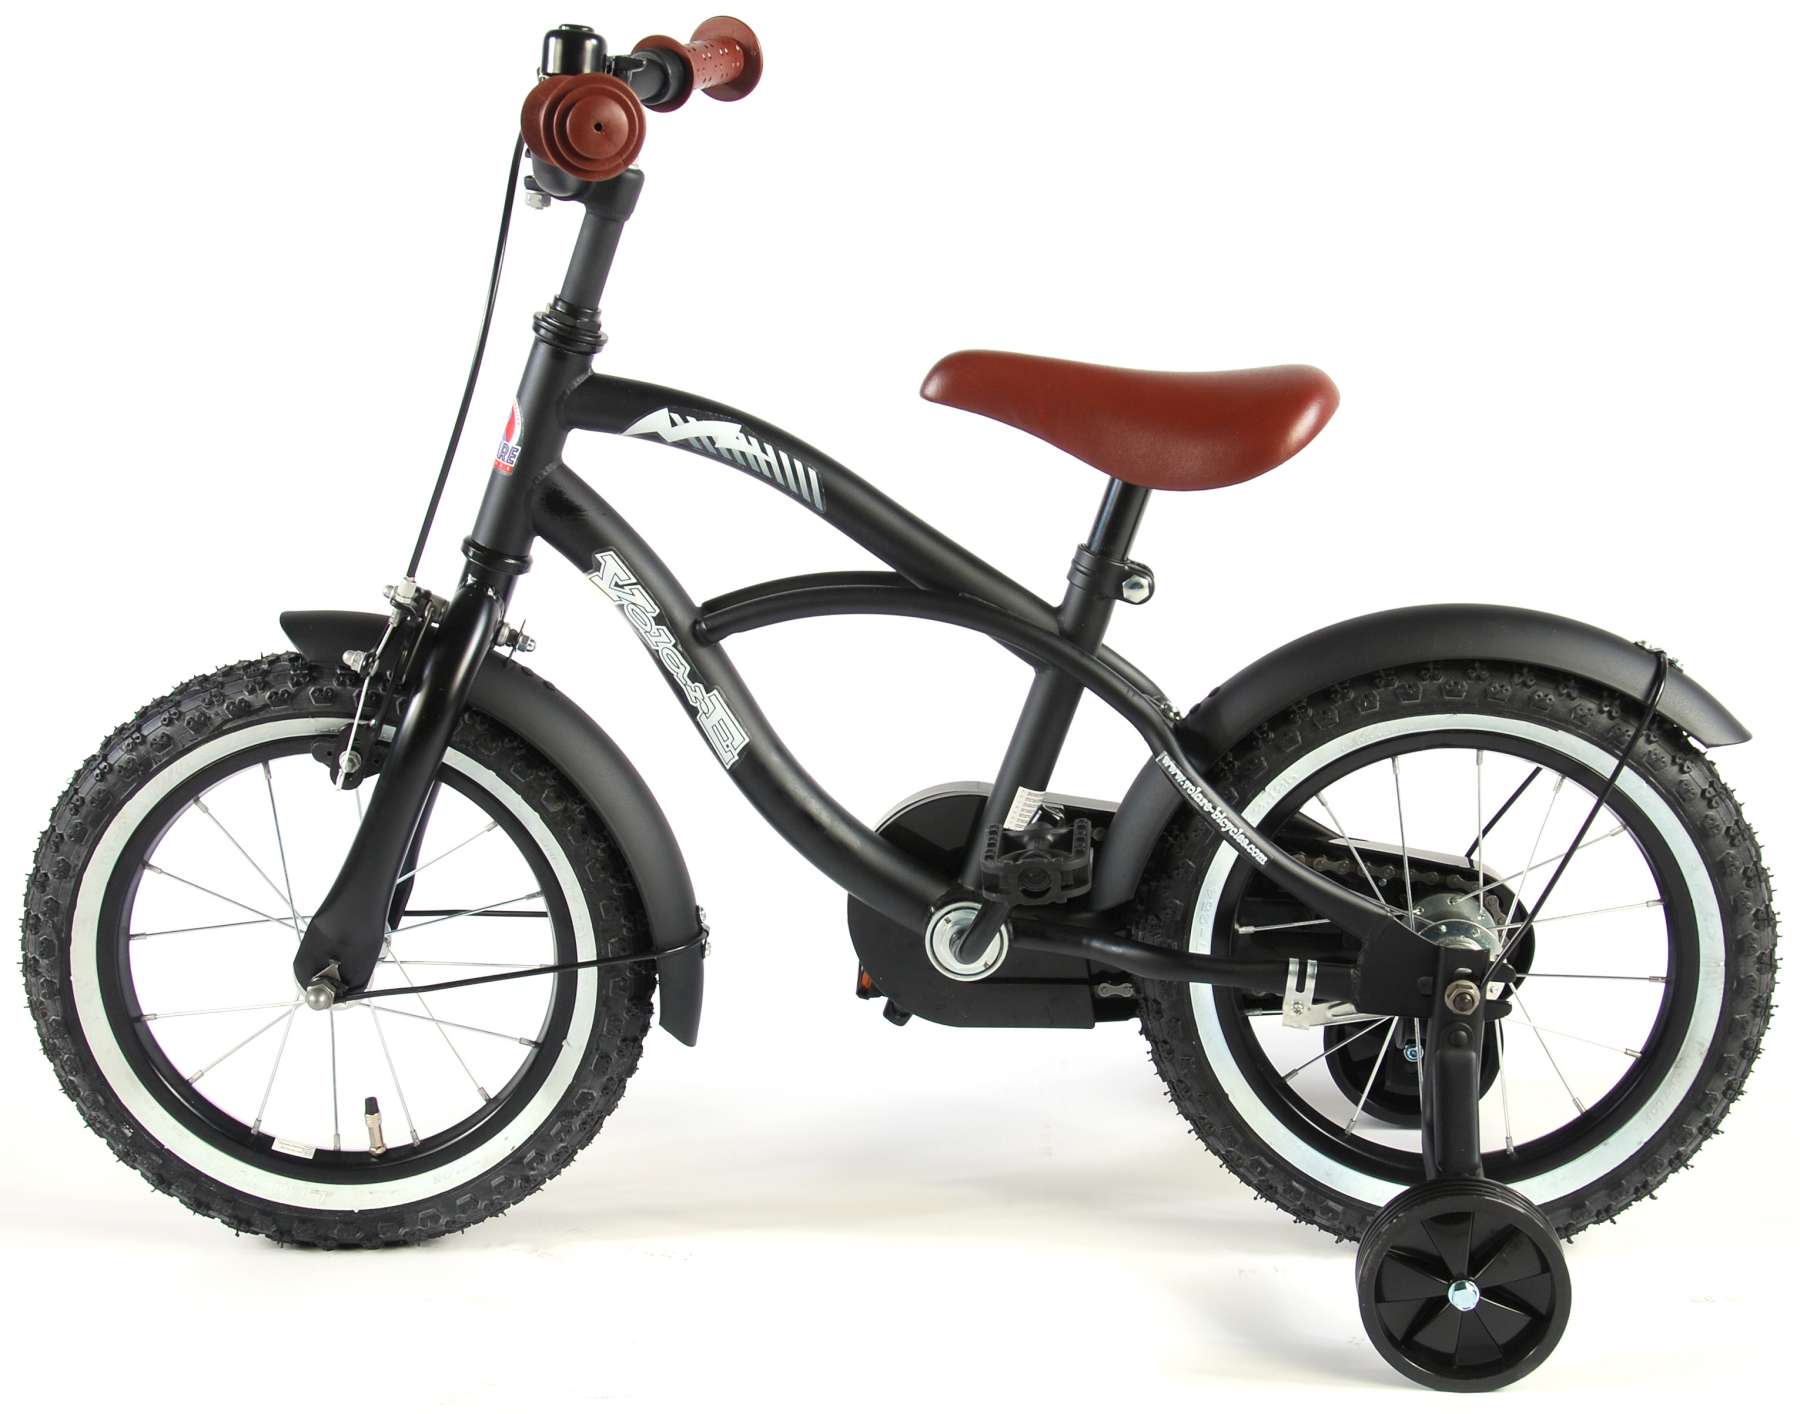 Kinderfahrrad Black Cruiser für Jungen 14 Zoll Kinderrad in Schwarz